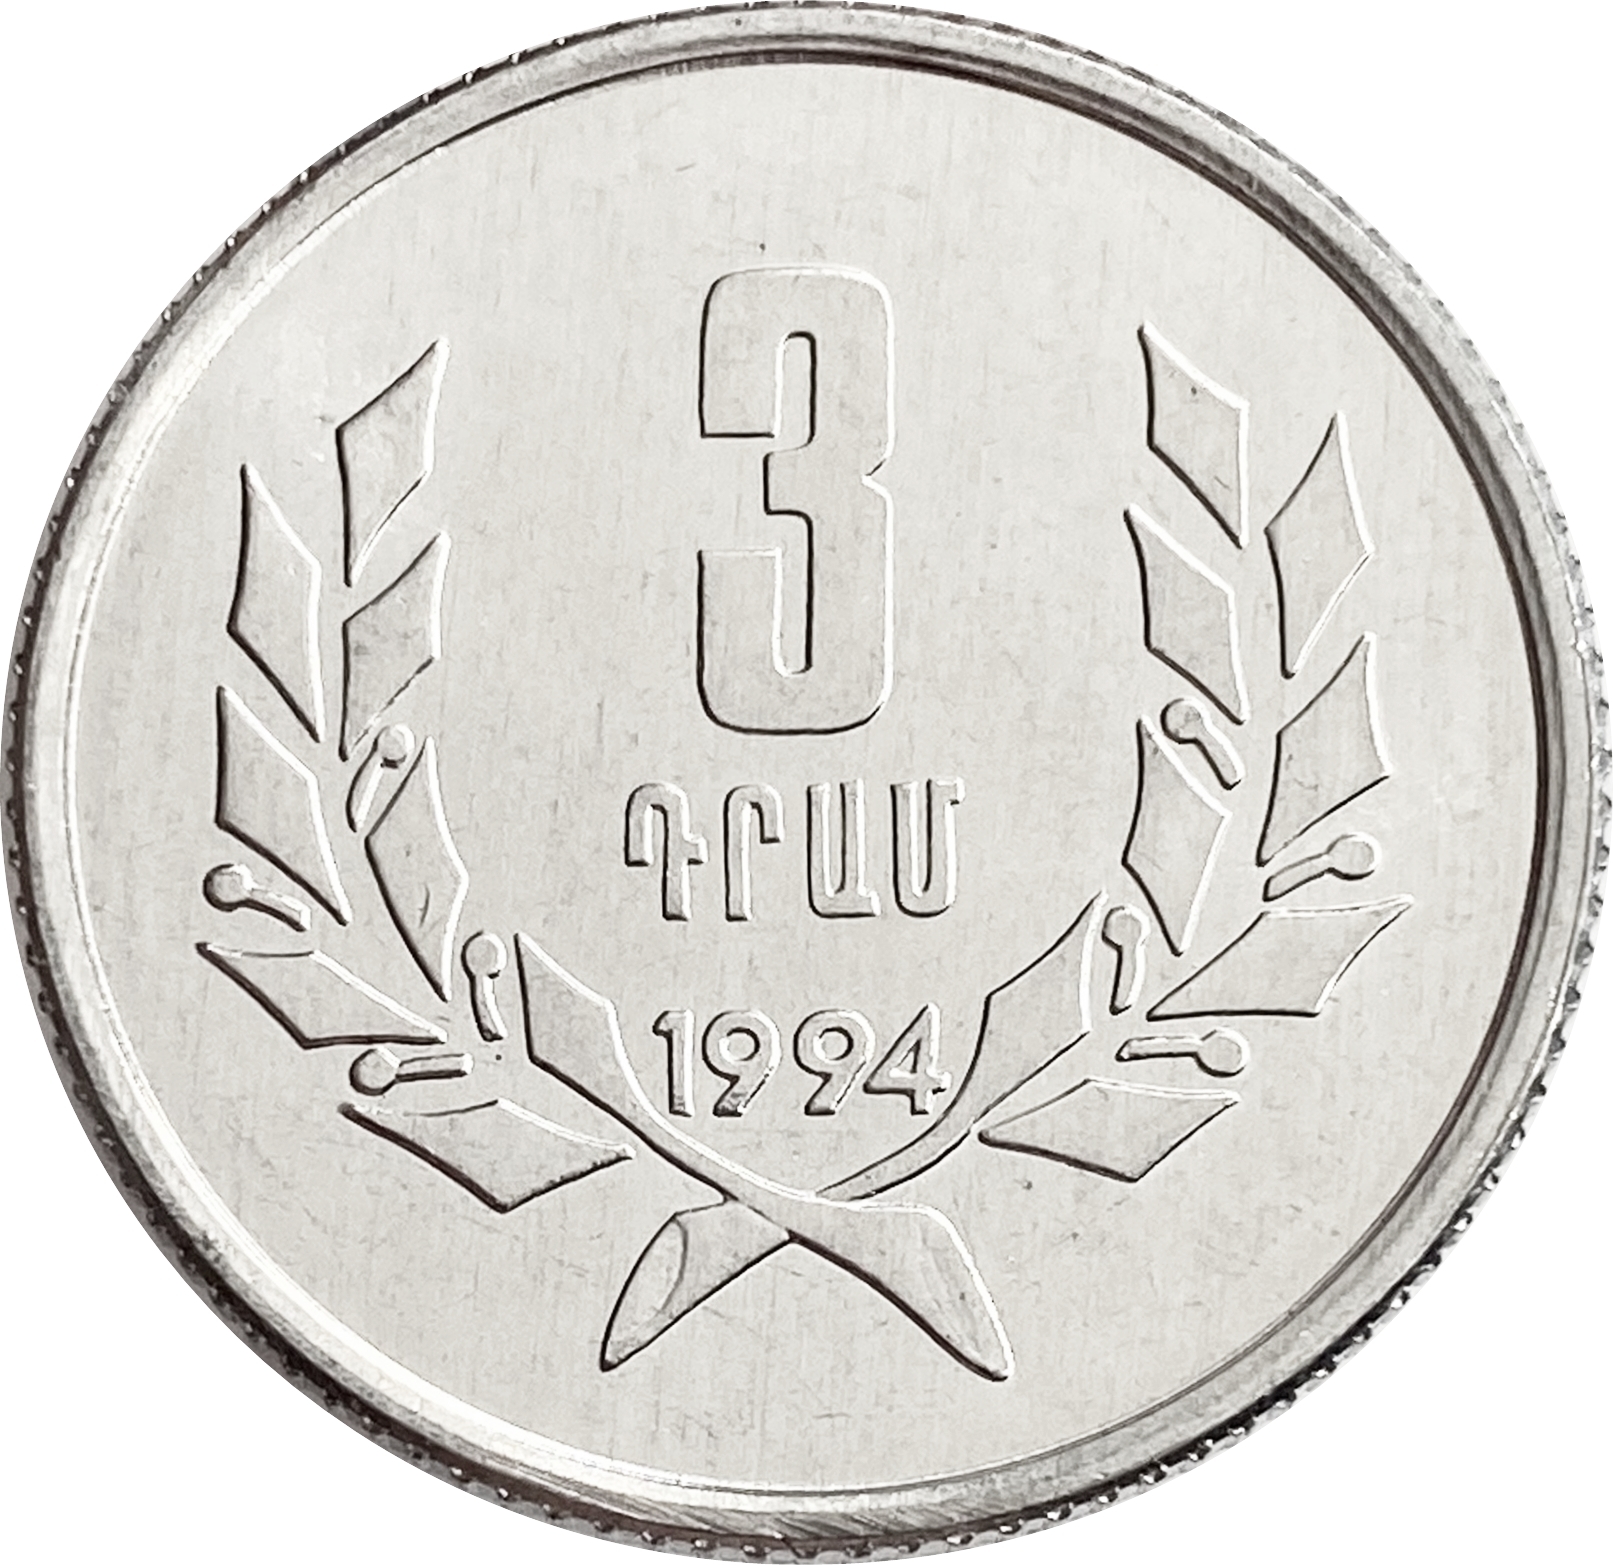 Rate am армянский драм. Монета 10 драм 1994 Армения. Монеты Армении. Деньги Армении 1994. 10 Драм 1994 года цена.